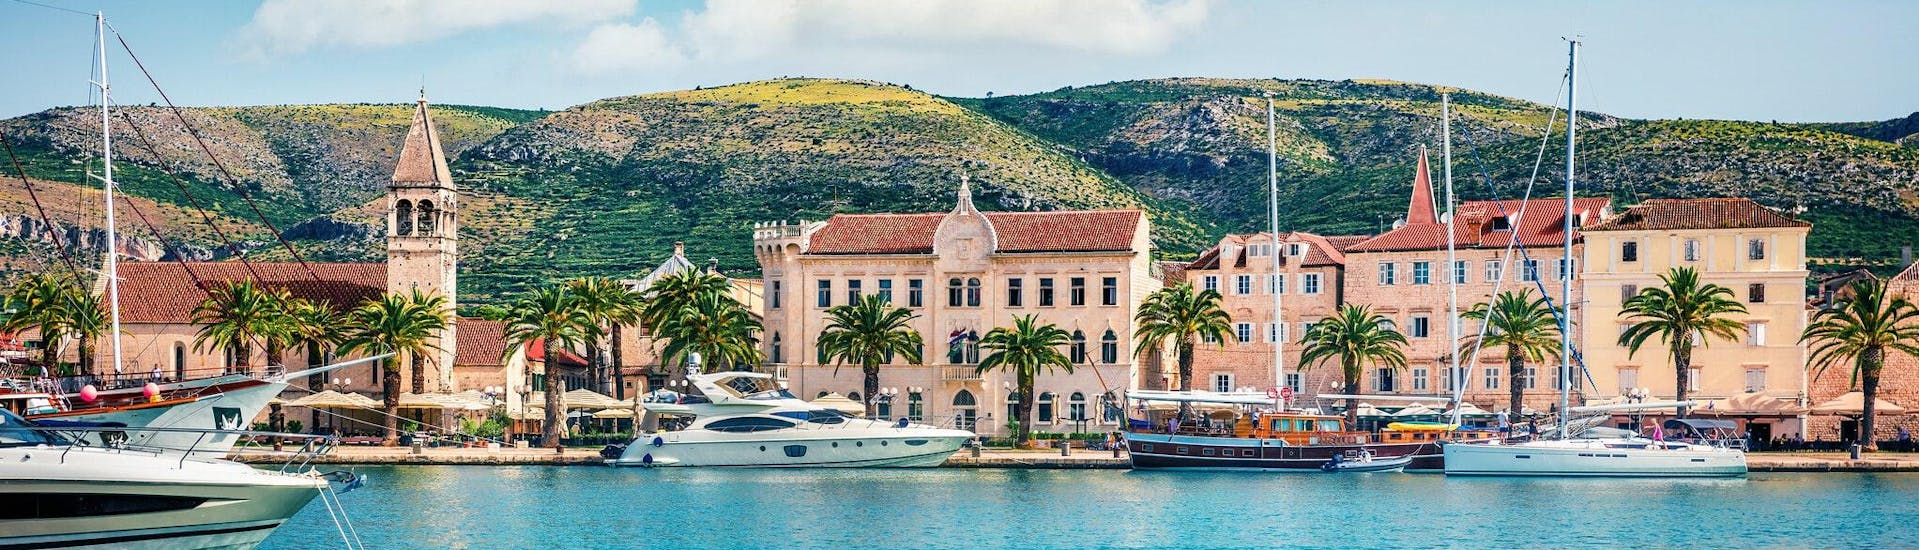 Blick auf den Hafen von Trogir, der ein beliebter Ausgangspunkt für Bootstouren in Dalmatien ist.